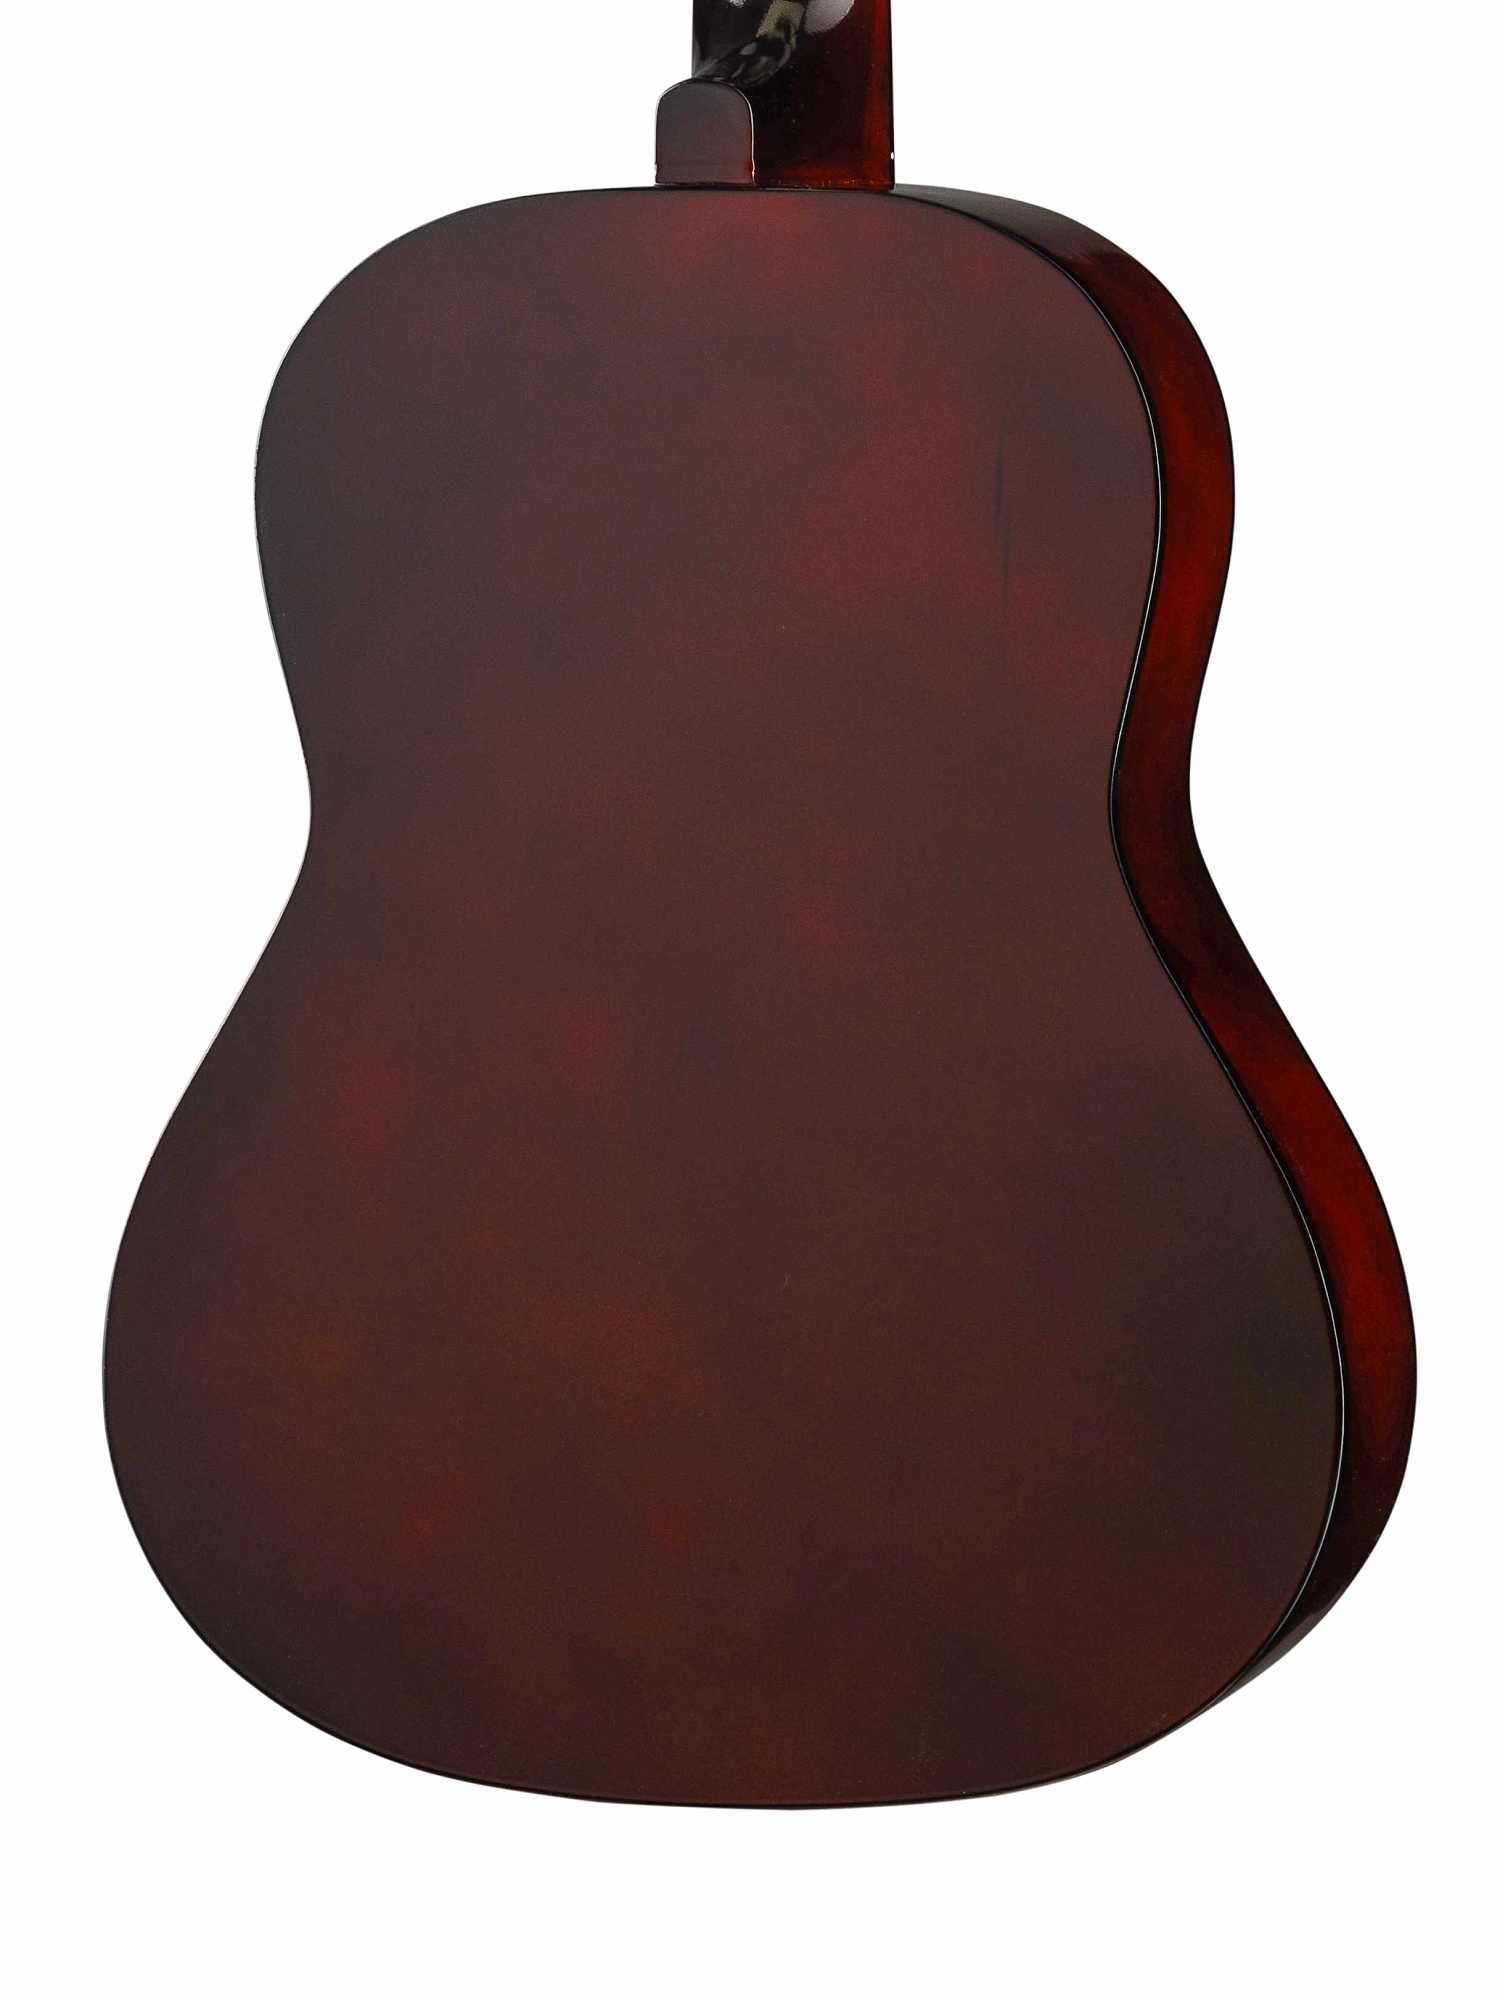 Foix FCG-1039NA Классическая гитара. купить в prostore.me